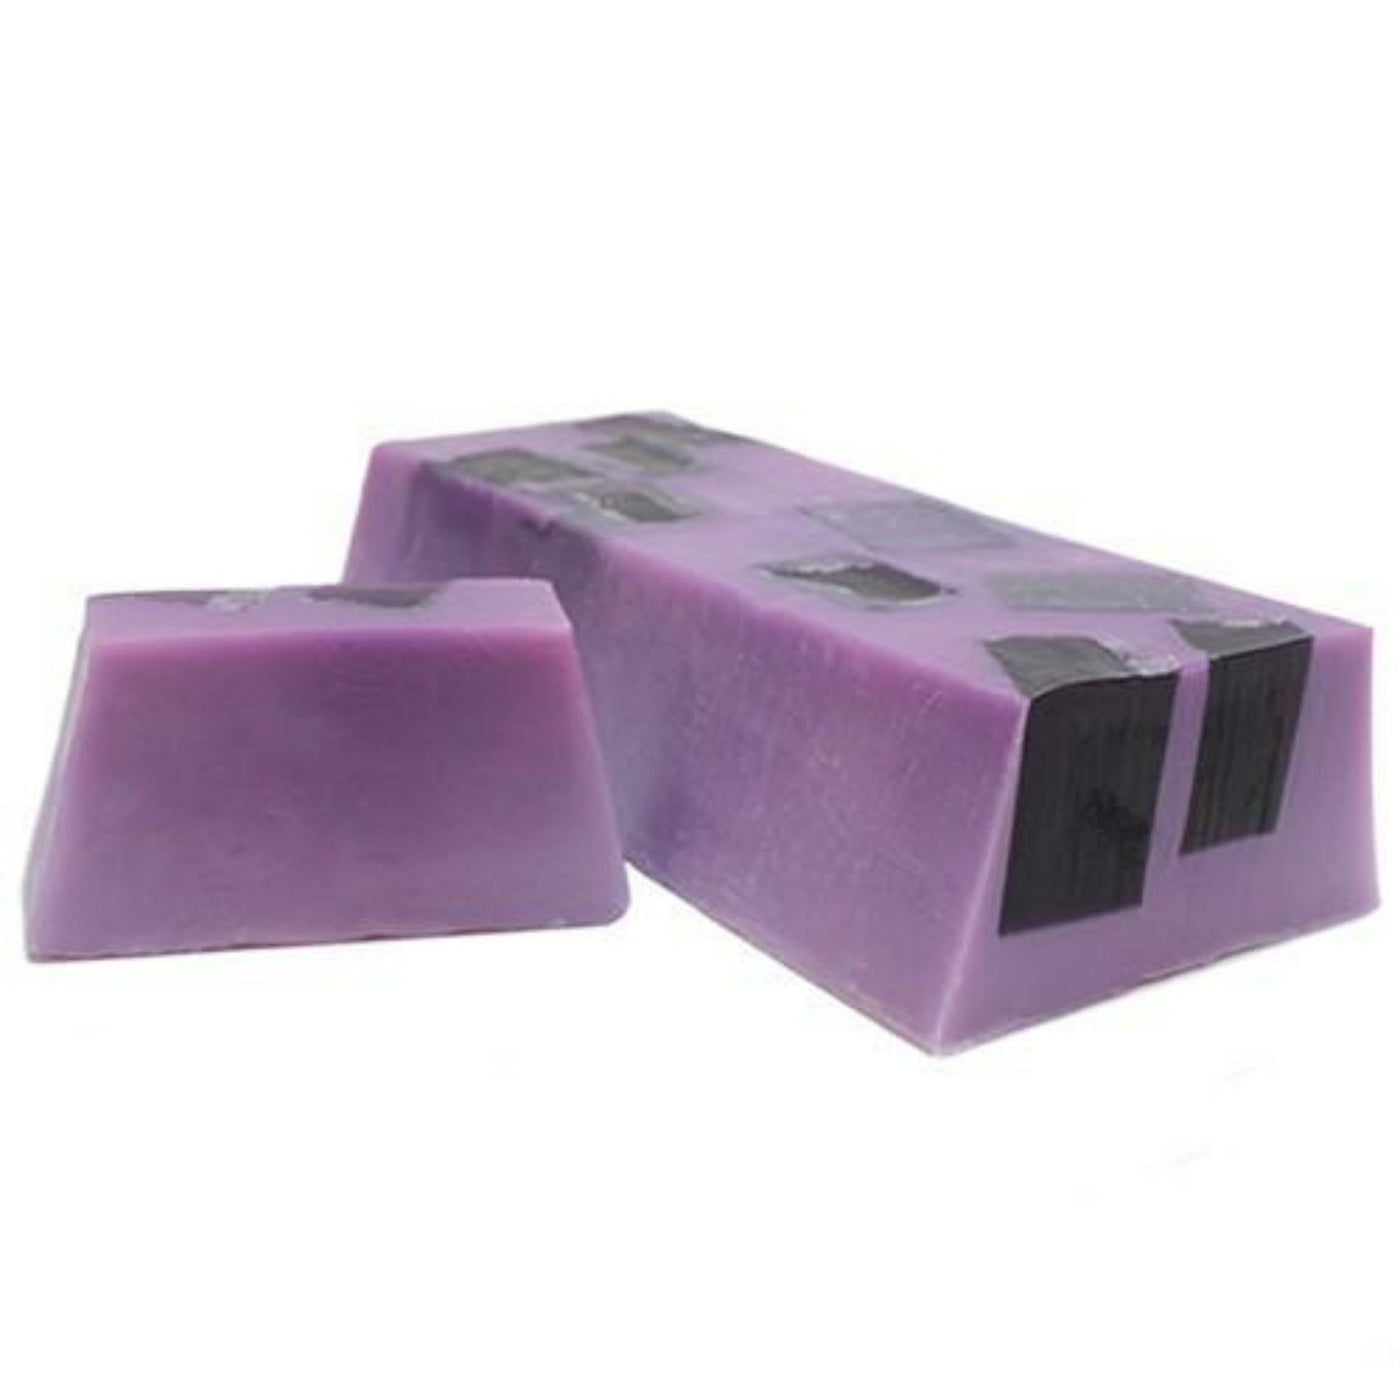 Yorkshire Handmade Violet Soap Bar